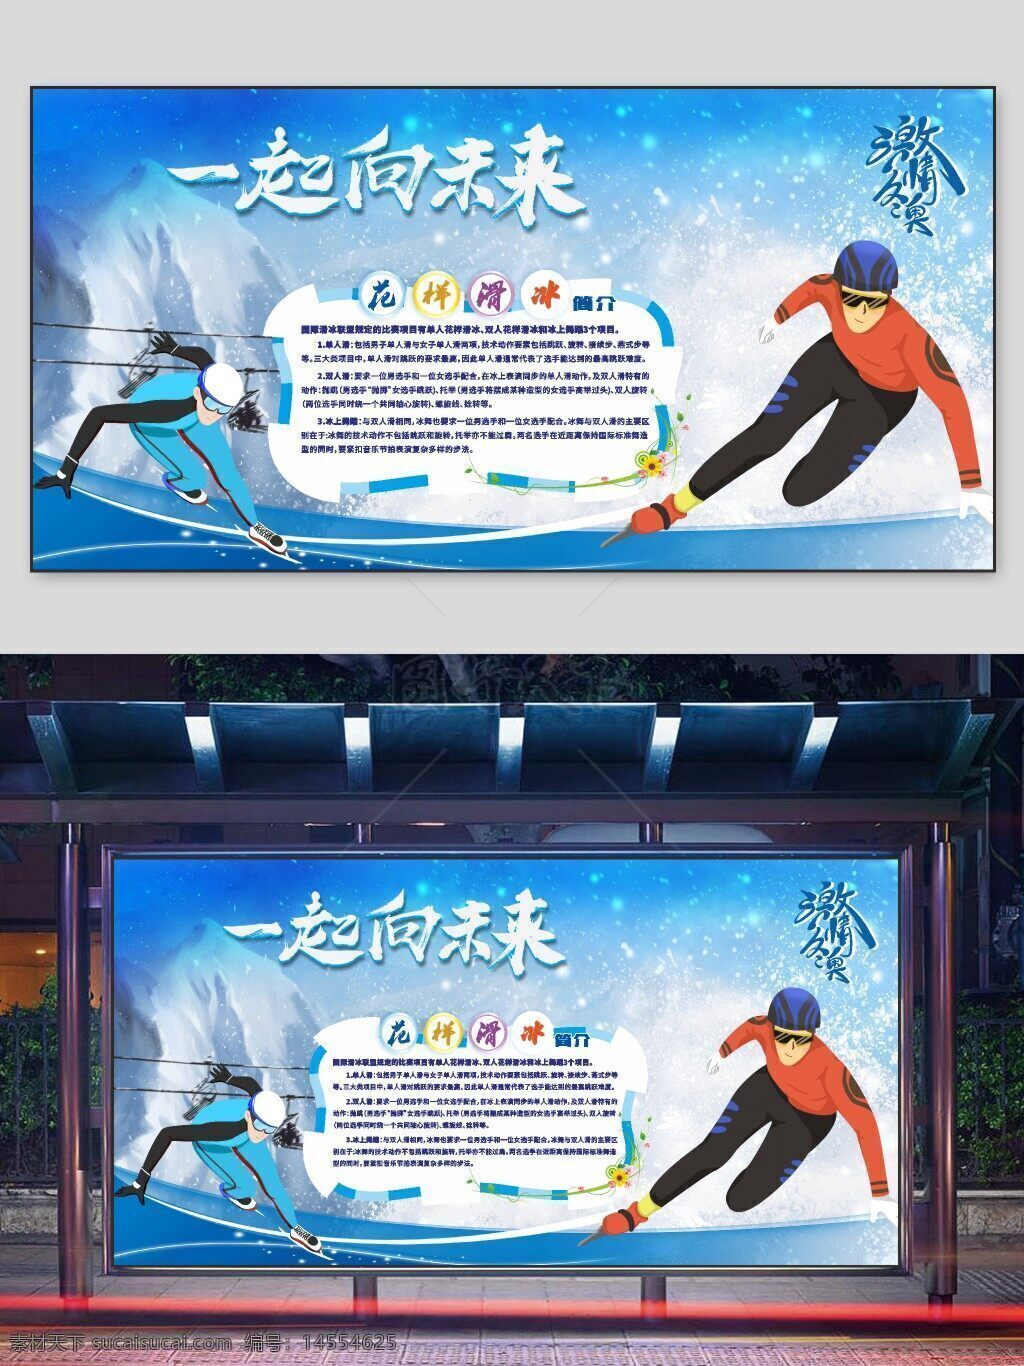 高山滑冰 相约北京 北京冬奥会 奥运主题 冬奥 奥运会 冰雪运动 冬奥会海报 奥林匹克 奥运文化 花样滑冰 冬奥会展板 2022北京冬奥会